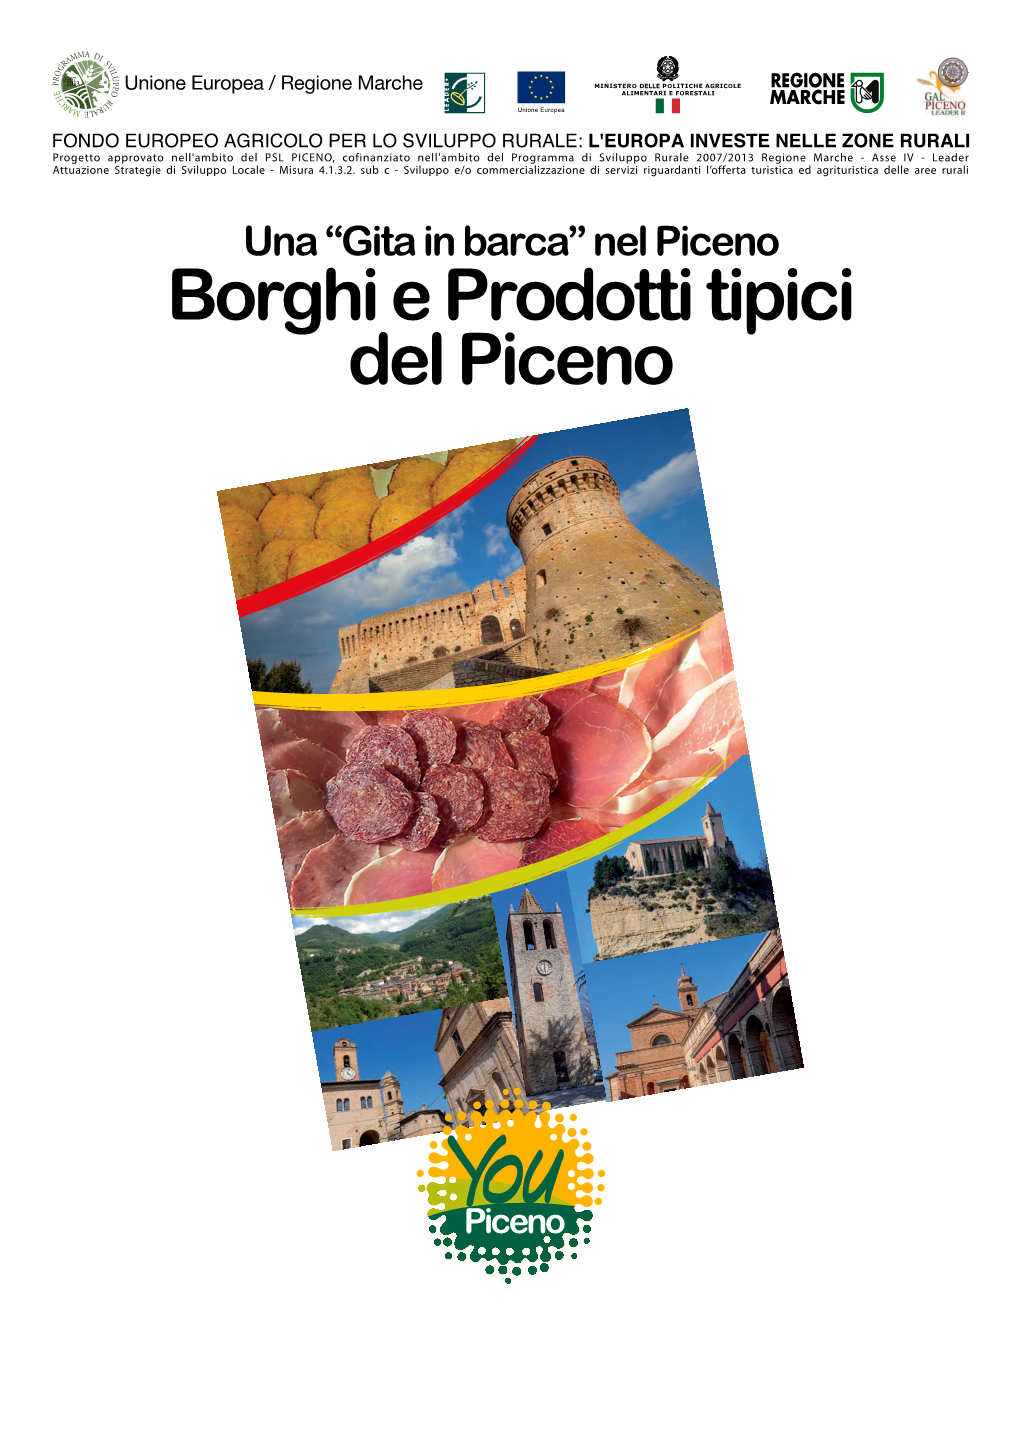 Borghi E Prodotti Tipici Del Piceno, Le Botteghe Artistiche Del Piceno)